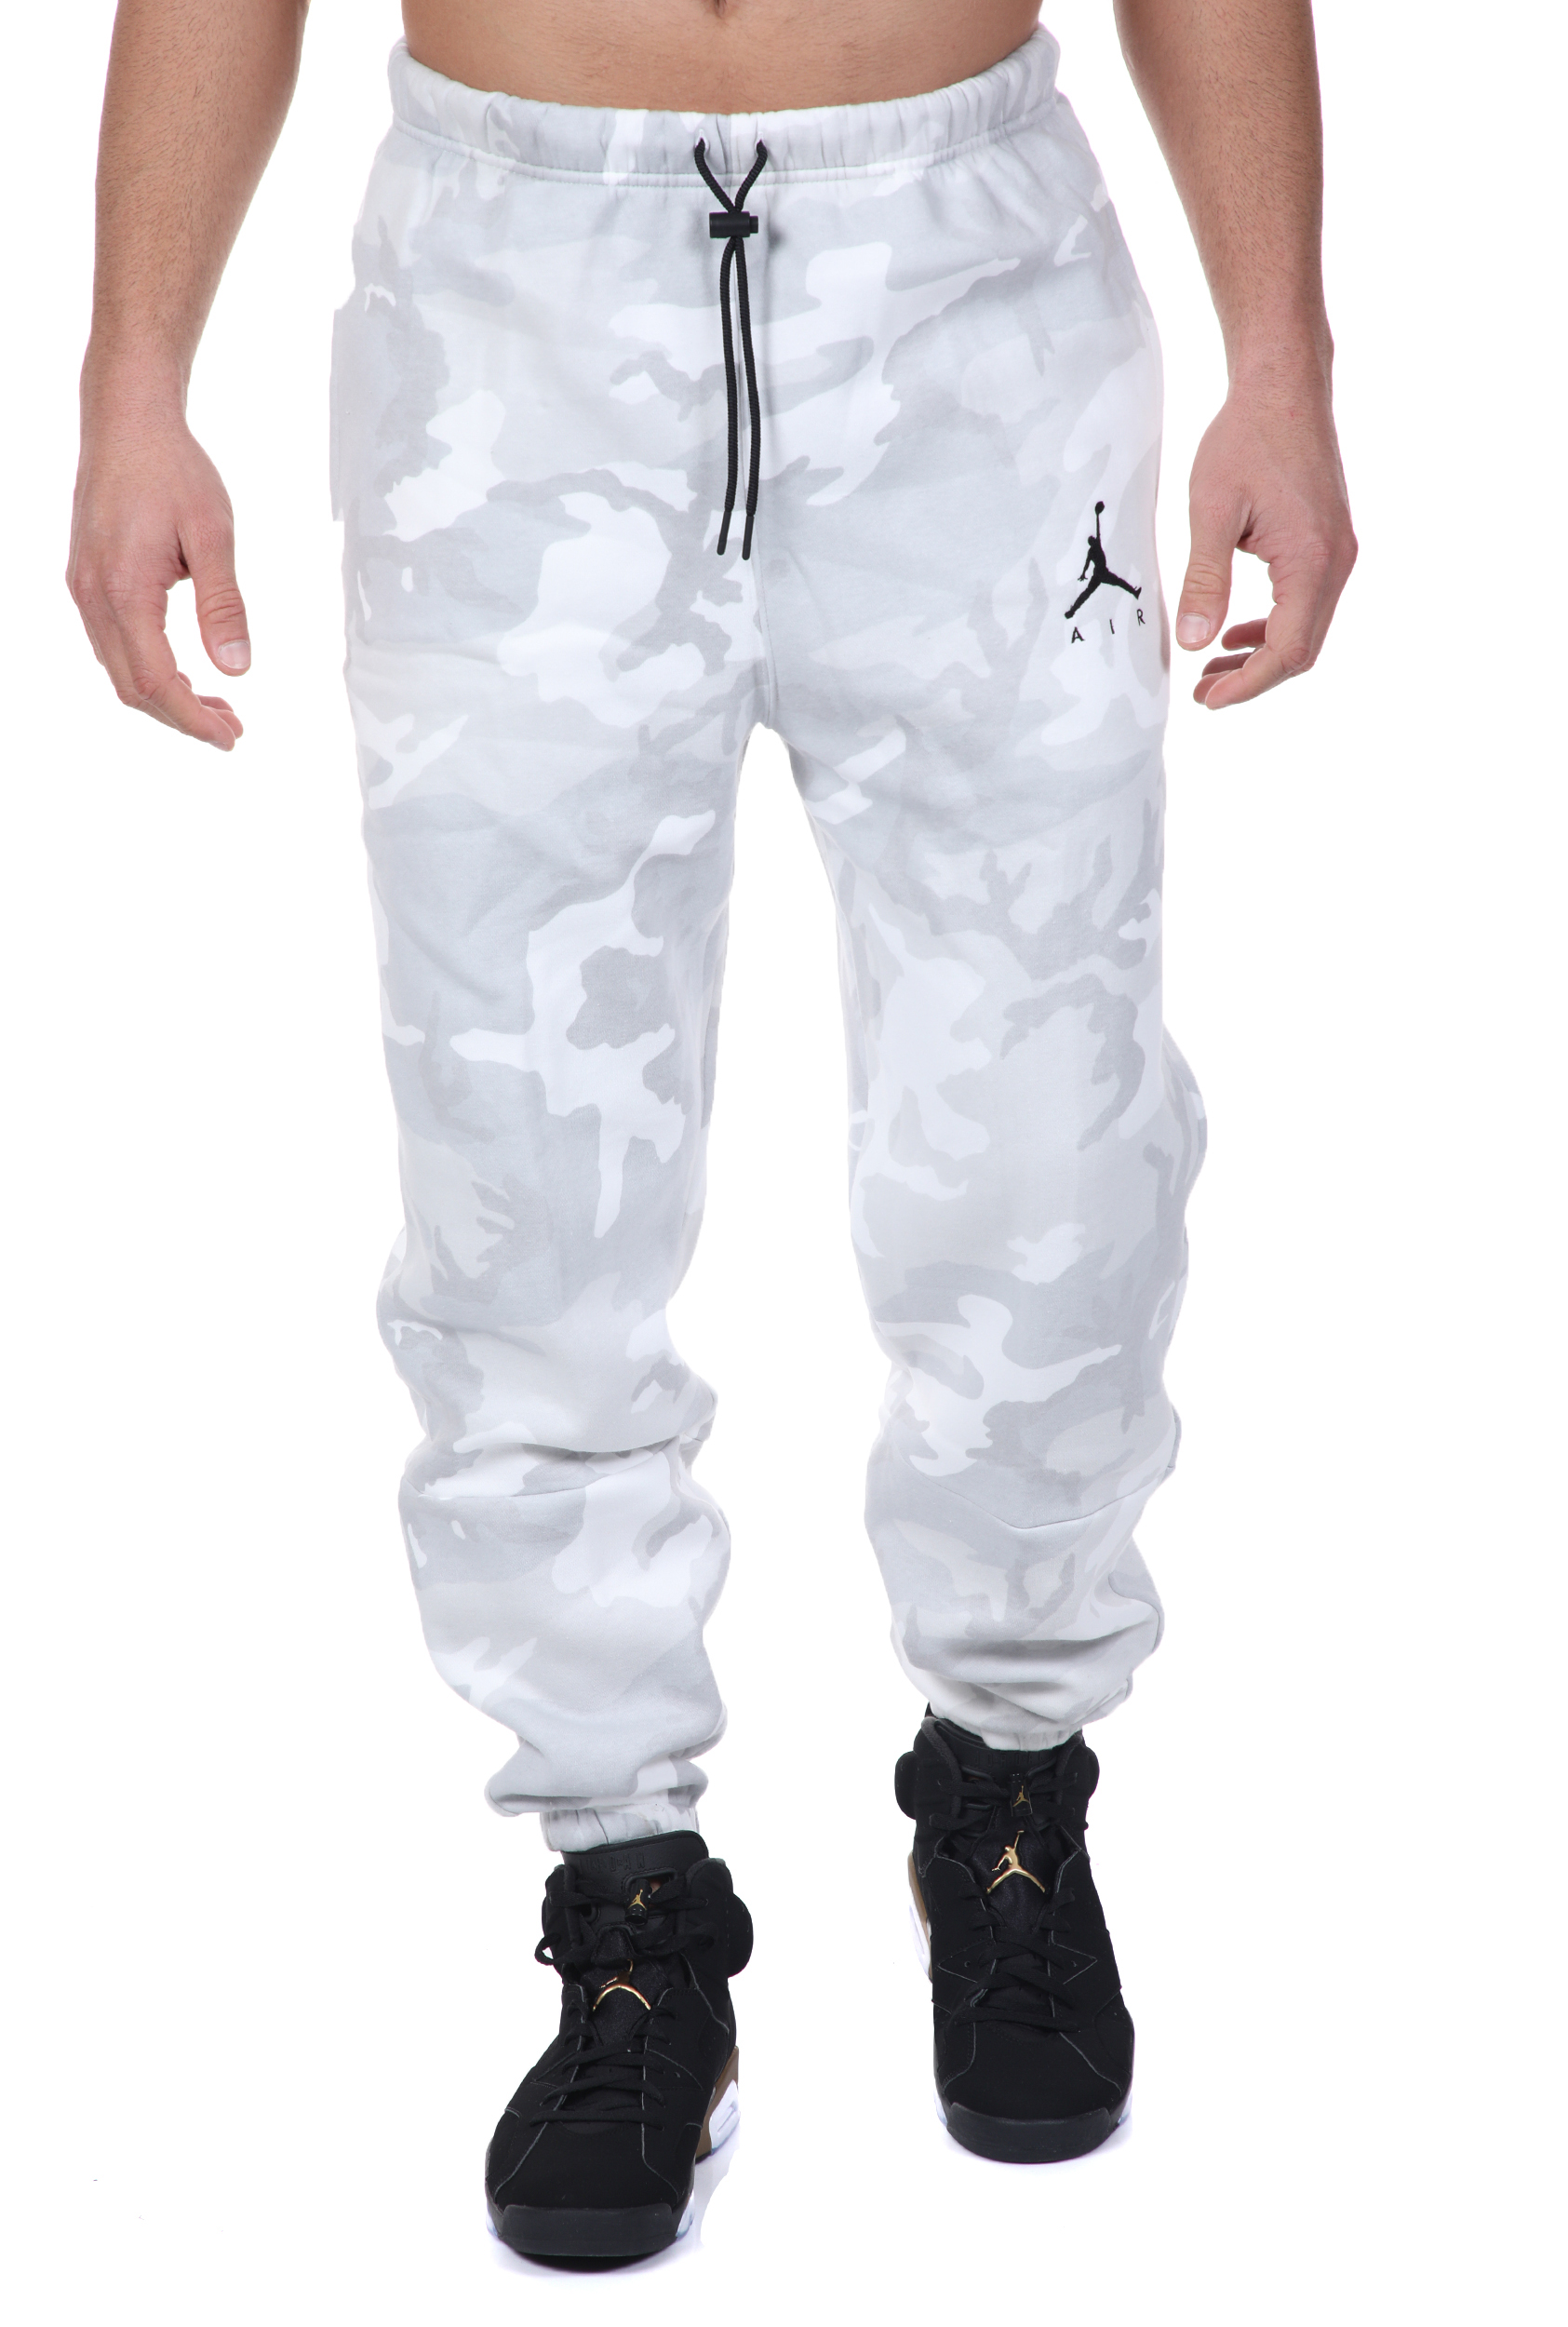 Ανδρικά/Ρούχα/Αθλητικά/Φόρμες NIKE - Ανδρικό παντελόνι φόρμας NIKE J JUMPMAN AIR CAMO FLC PANT γκρι λευκό